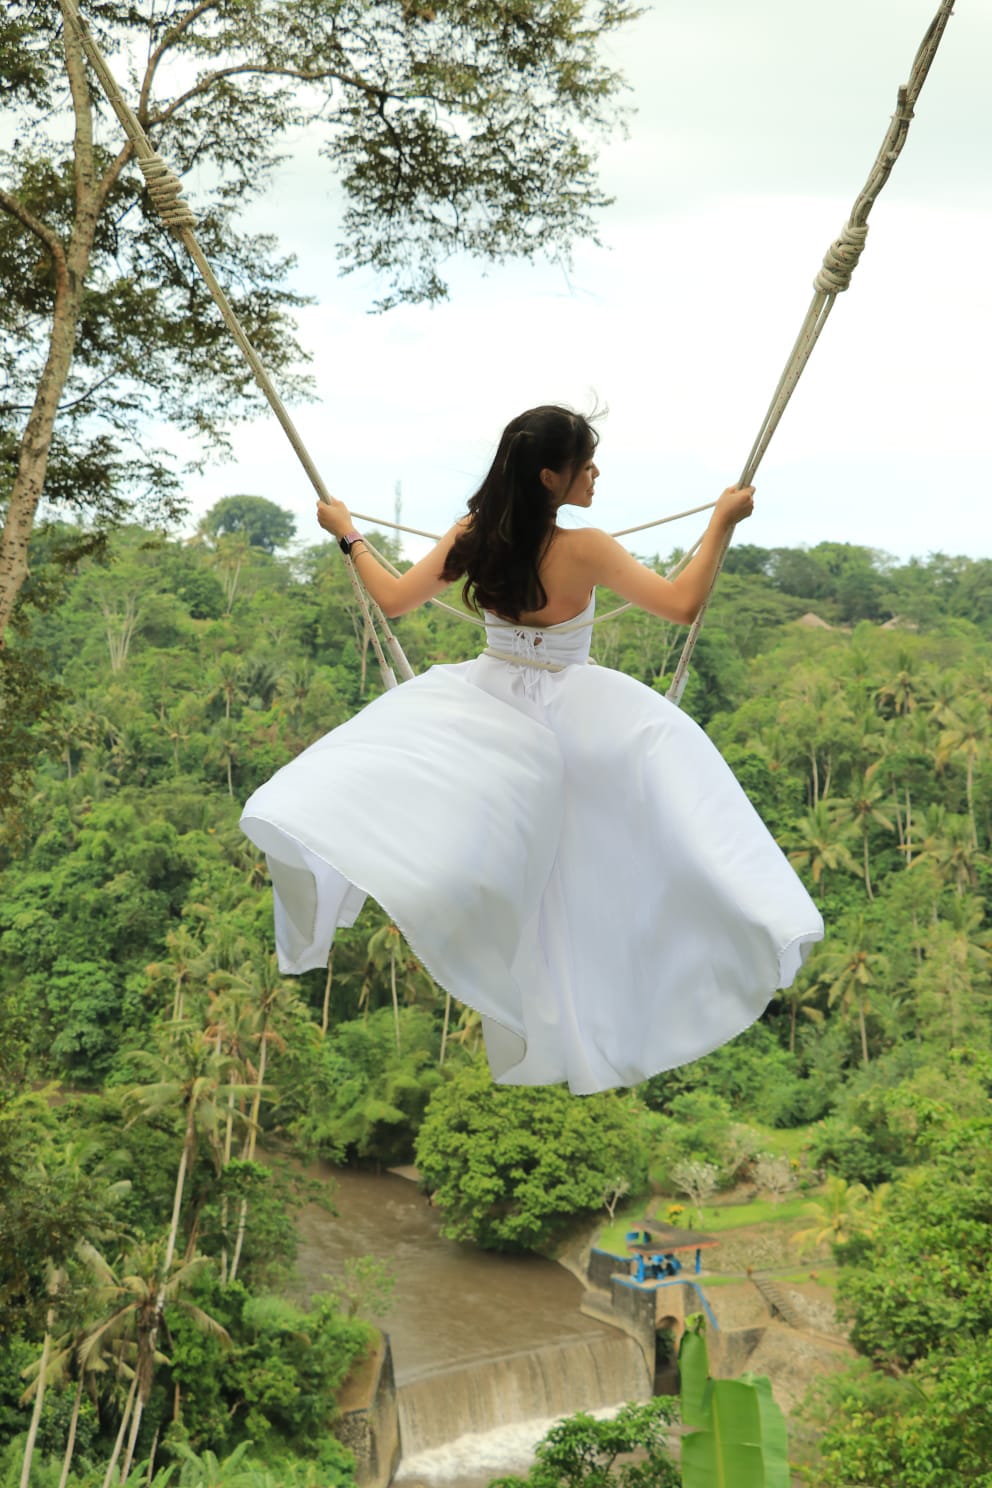 烏布 Bali Swing 叢林鞦韆體驗